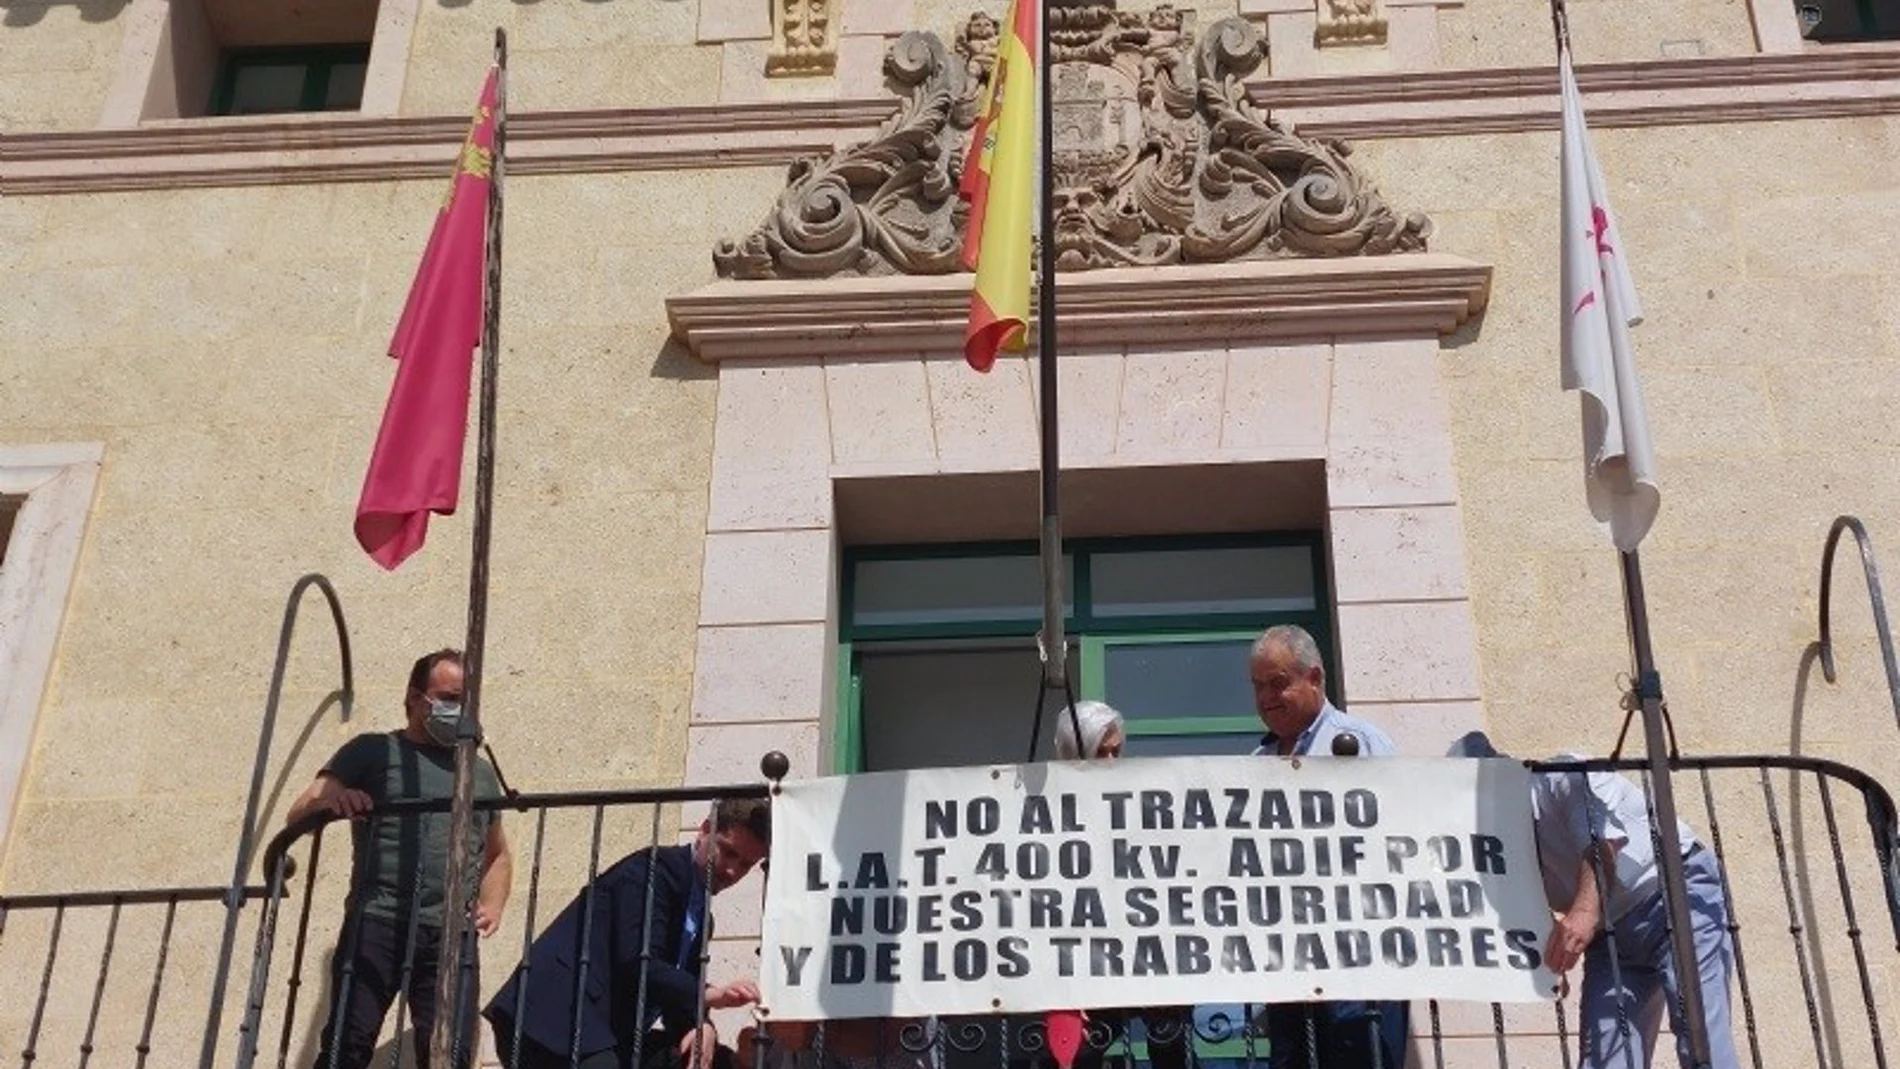 Miembros de la Plataforma de Afectados por la Línea de Alta Tensión de la Catenaria del AVE a su paso por el municipio de Totana (Murcia) se han encerrado este martes en el Salón de Plenos del Ayuntamiento